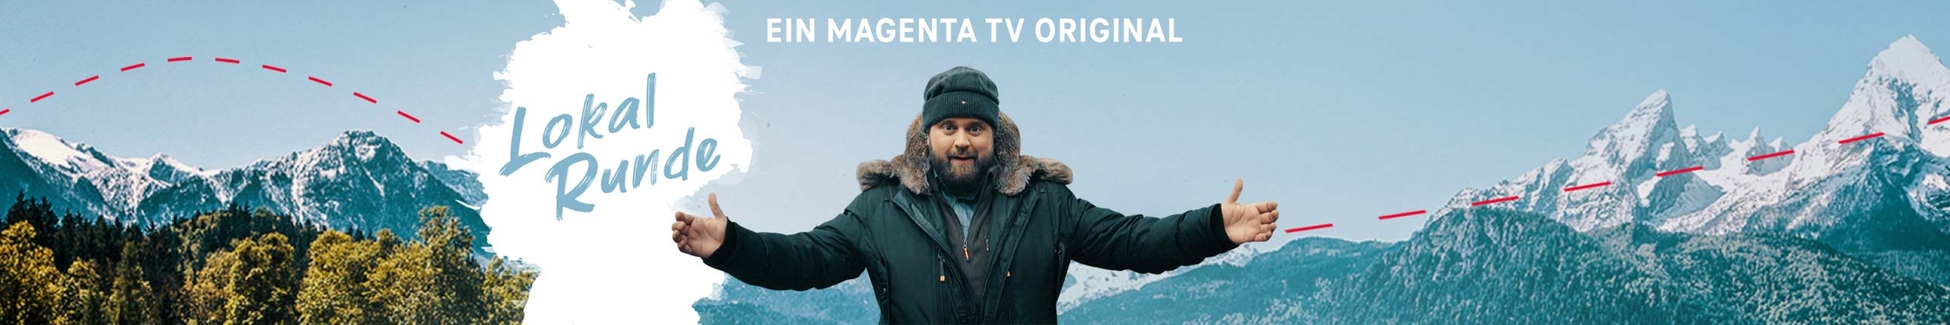 MagentaTV: Lokalrunde